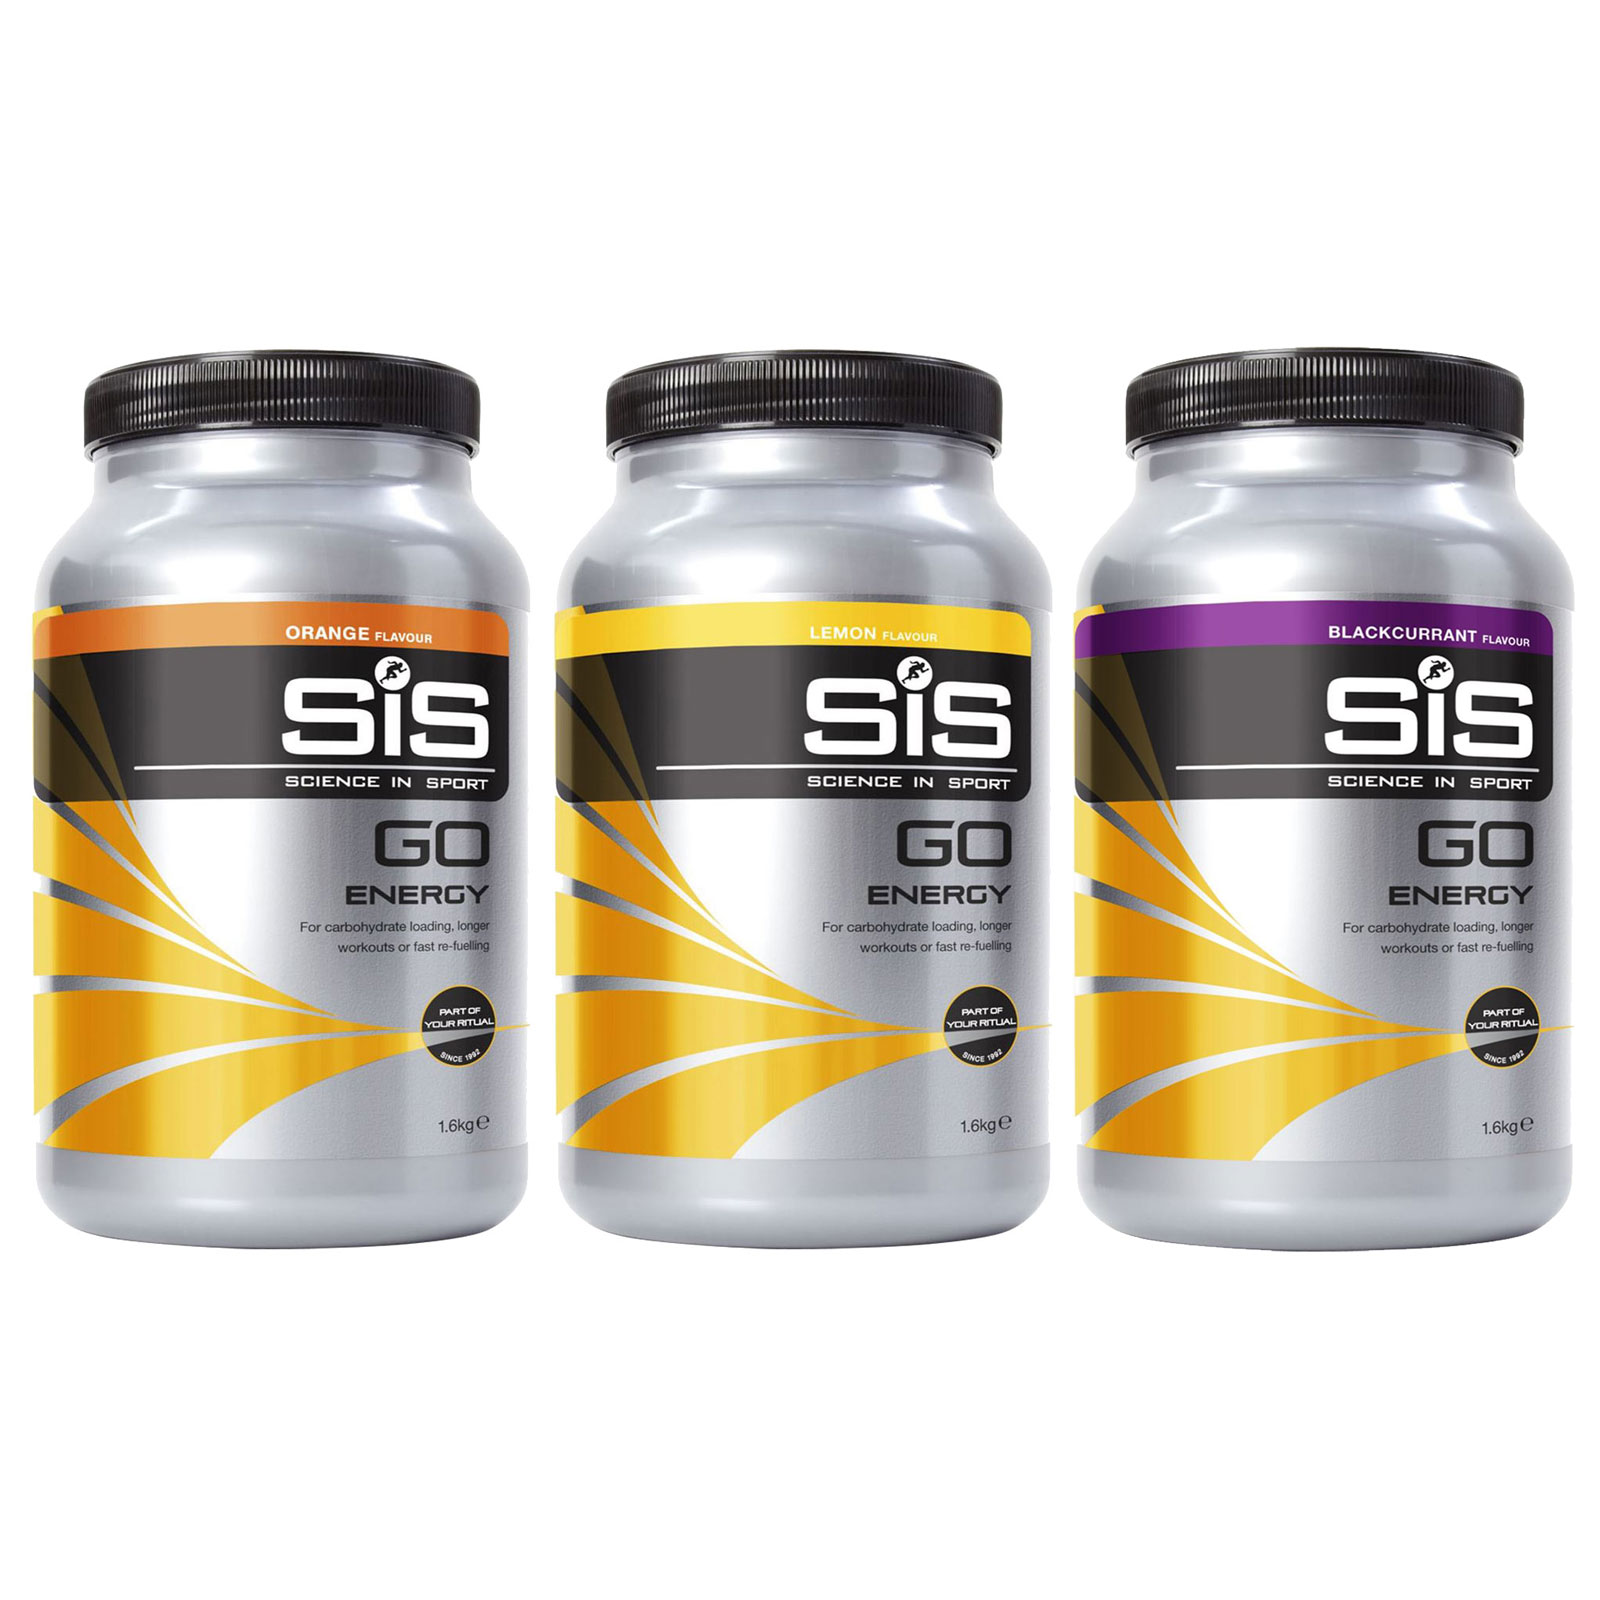 Produktbild von SiS GO Energy Powder - Kohlenhydrat-Getränkepulver - 1600g